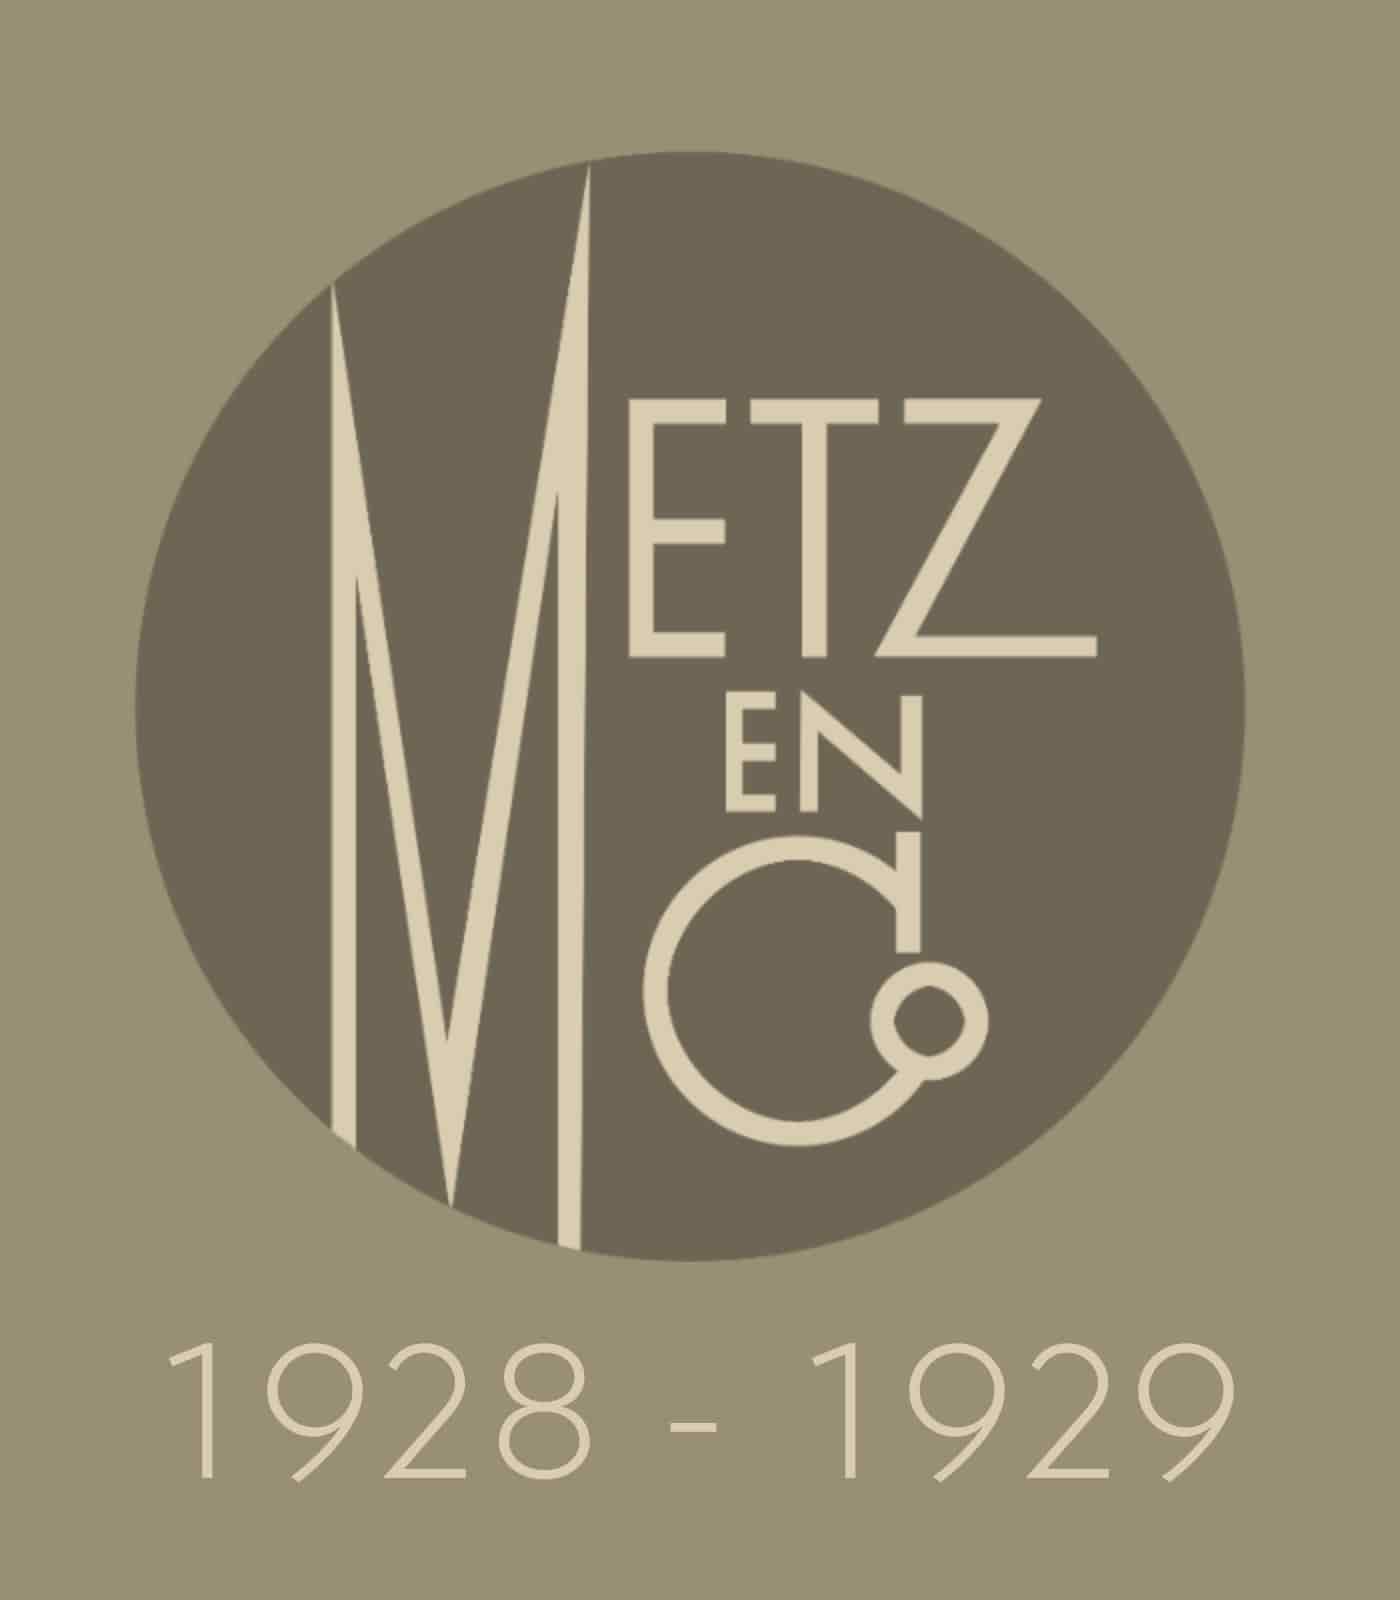 Metz & Co. logo